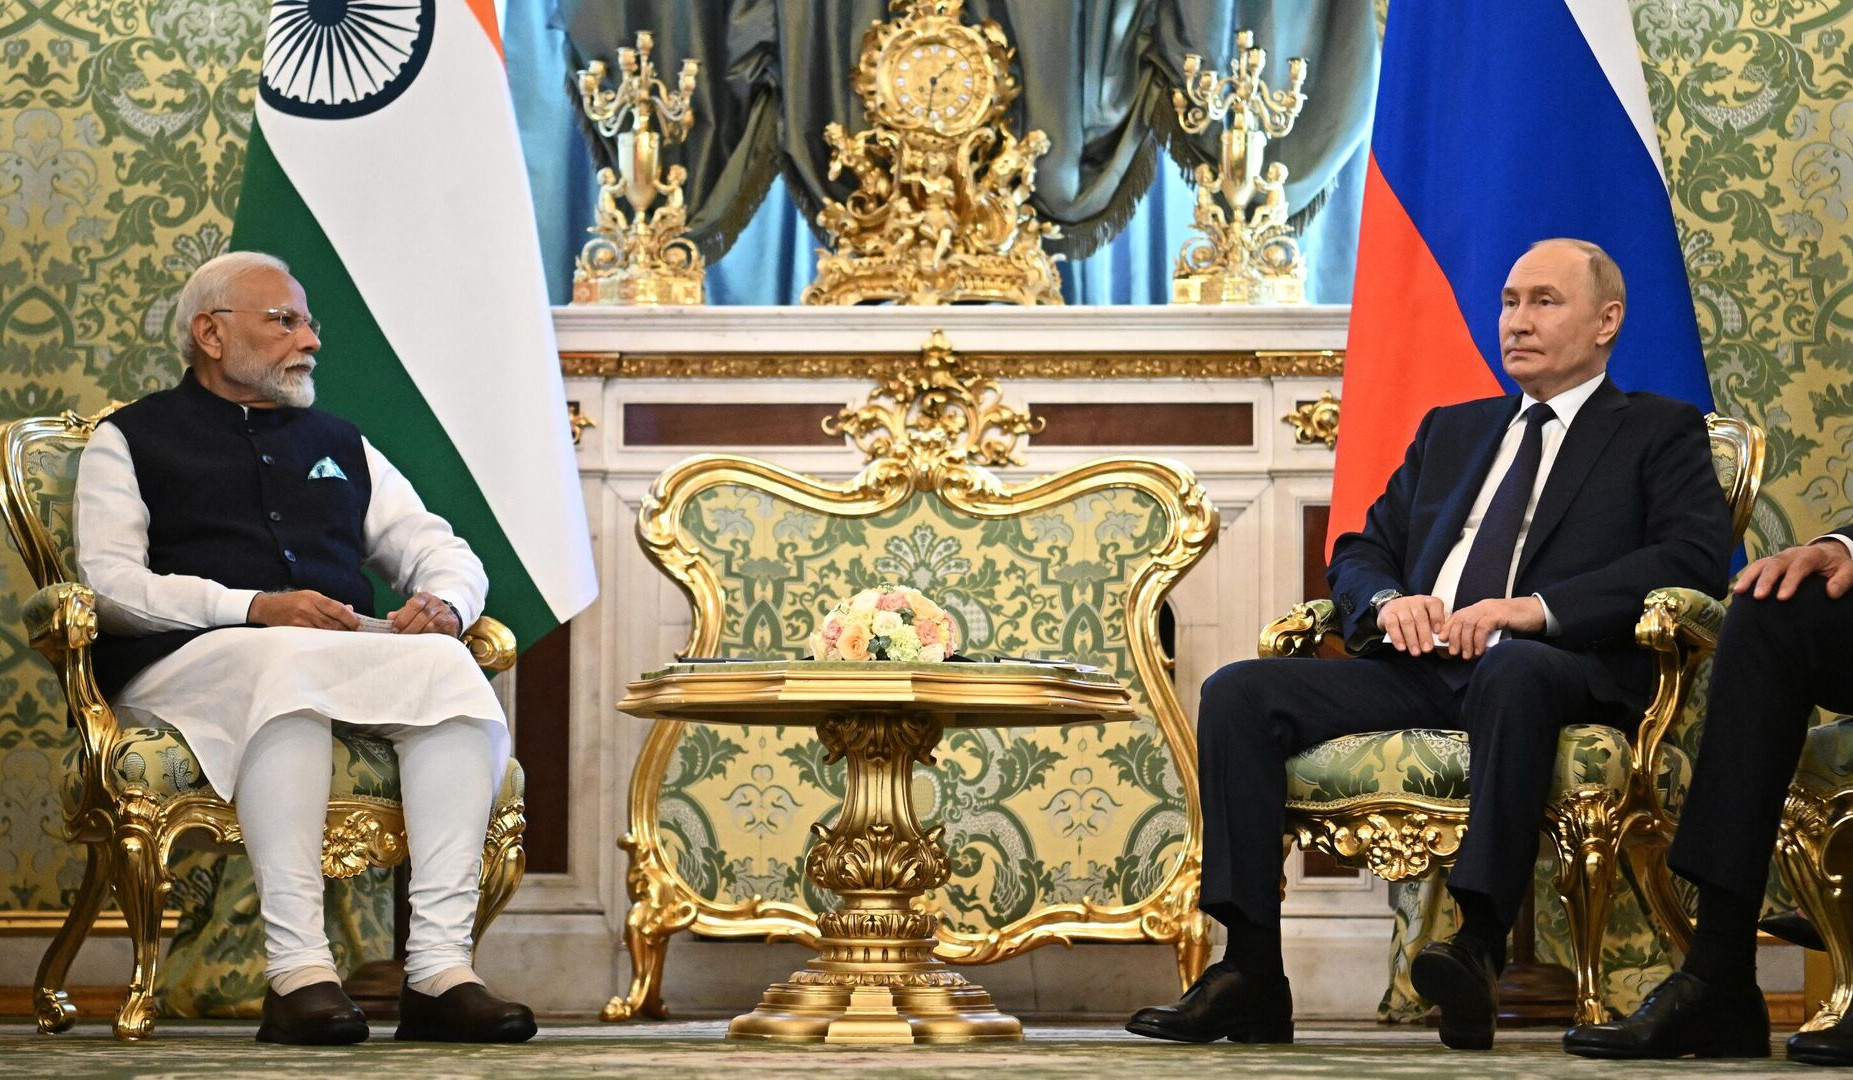 РФ и Индию связывает особо привилегированное стратегическое партнерство: Путин